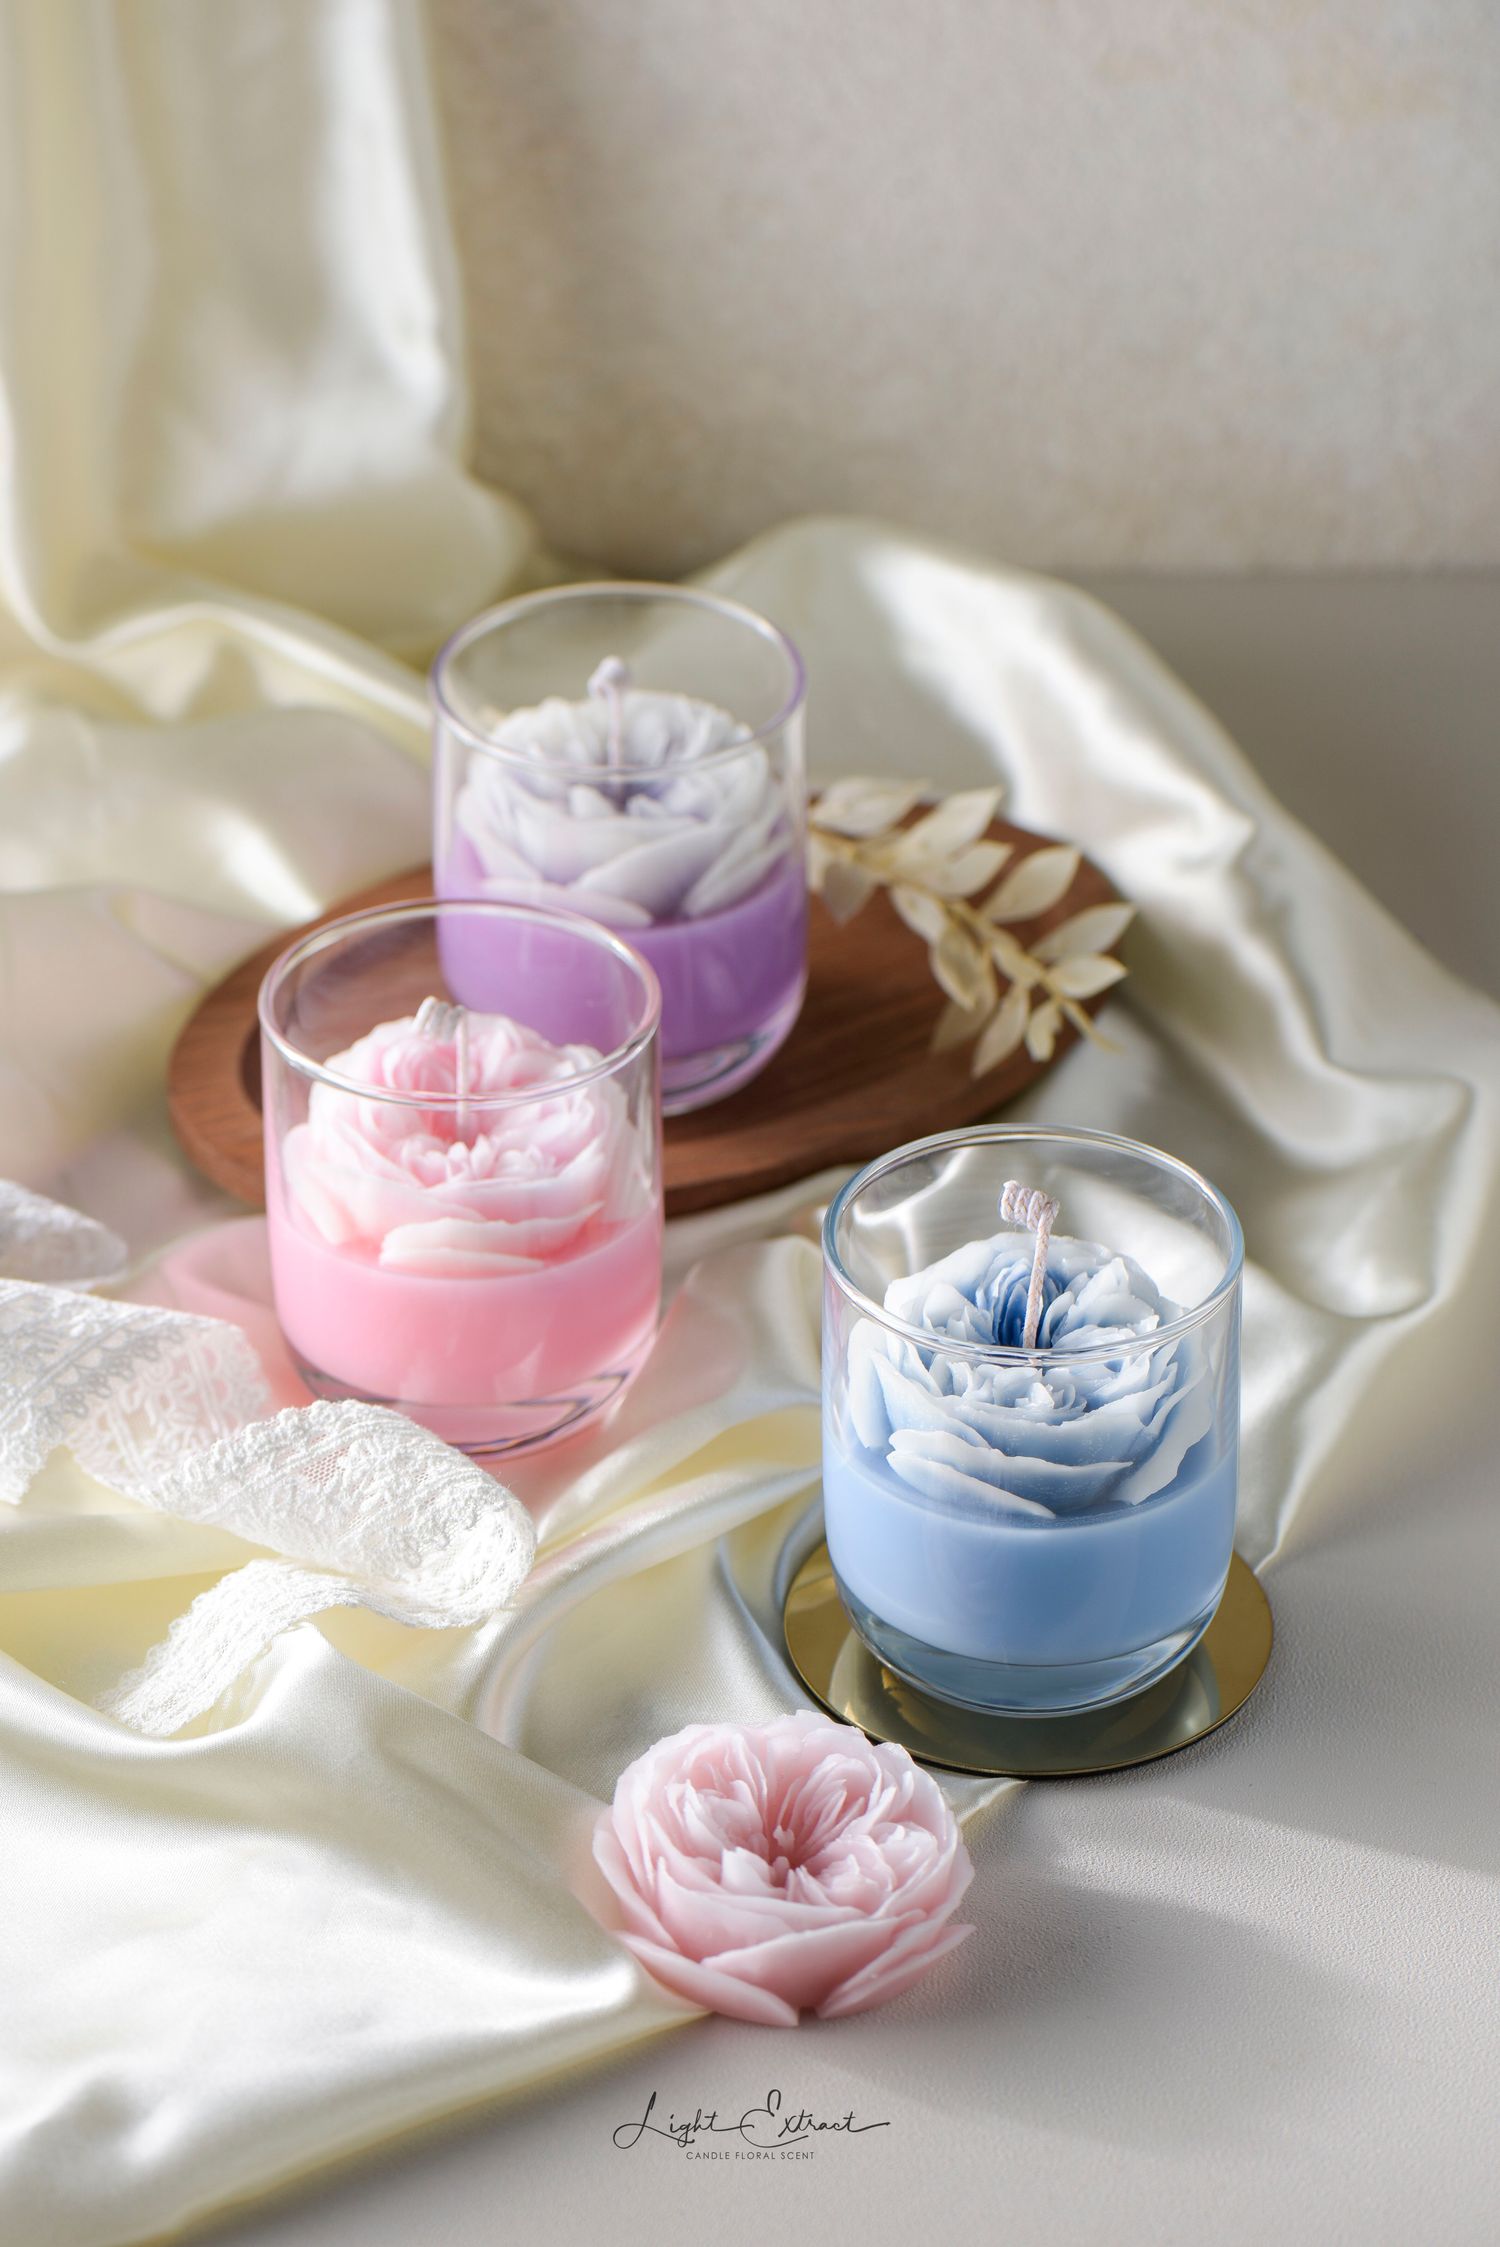 植民地 - 花藝設計 · 韓式蠟燭 · 香氛沐浴品 · 精緻香氛 - 